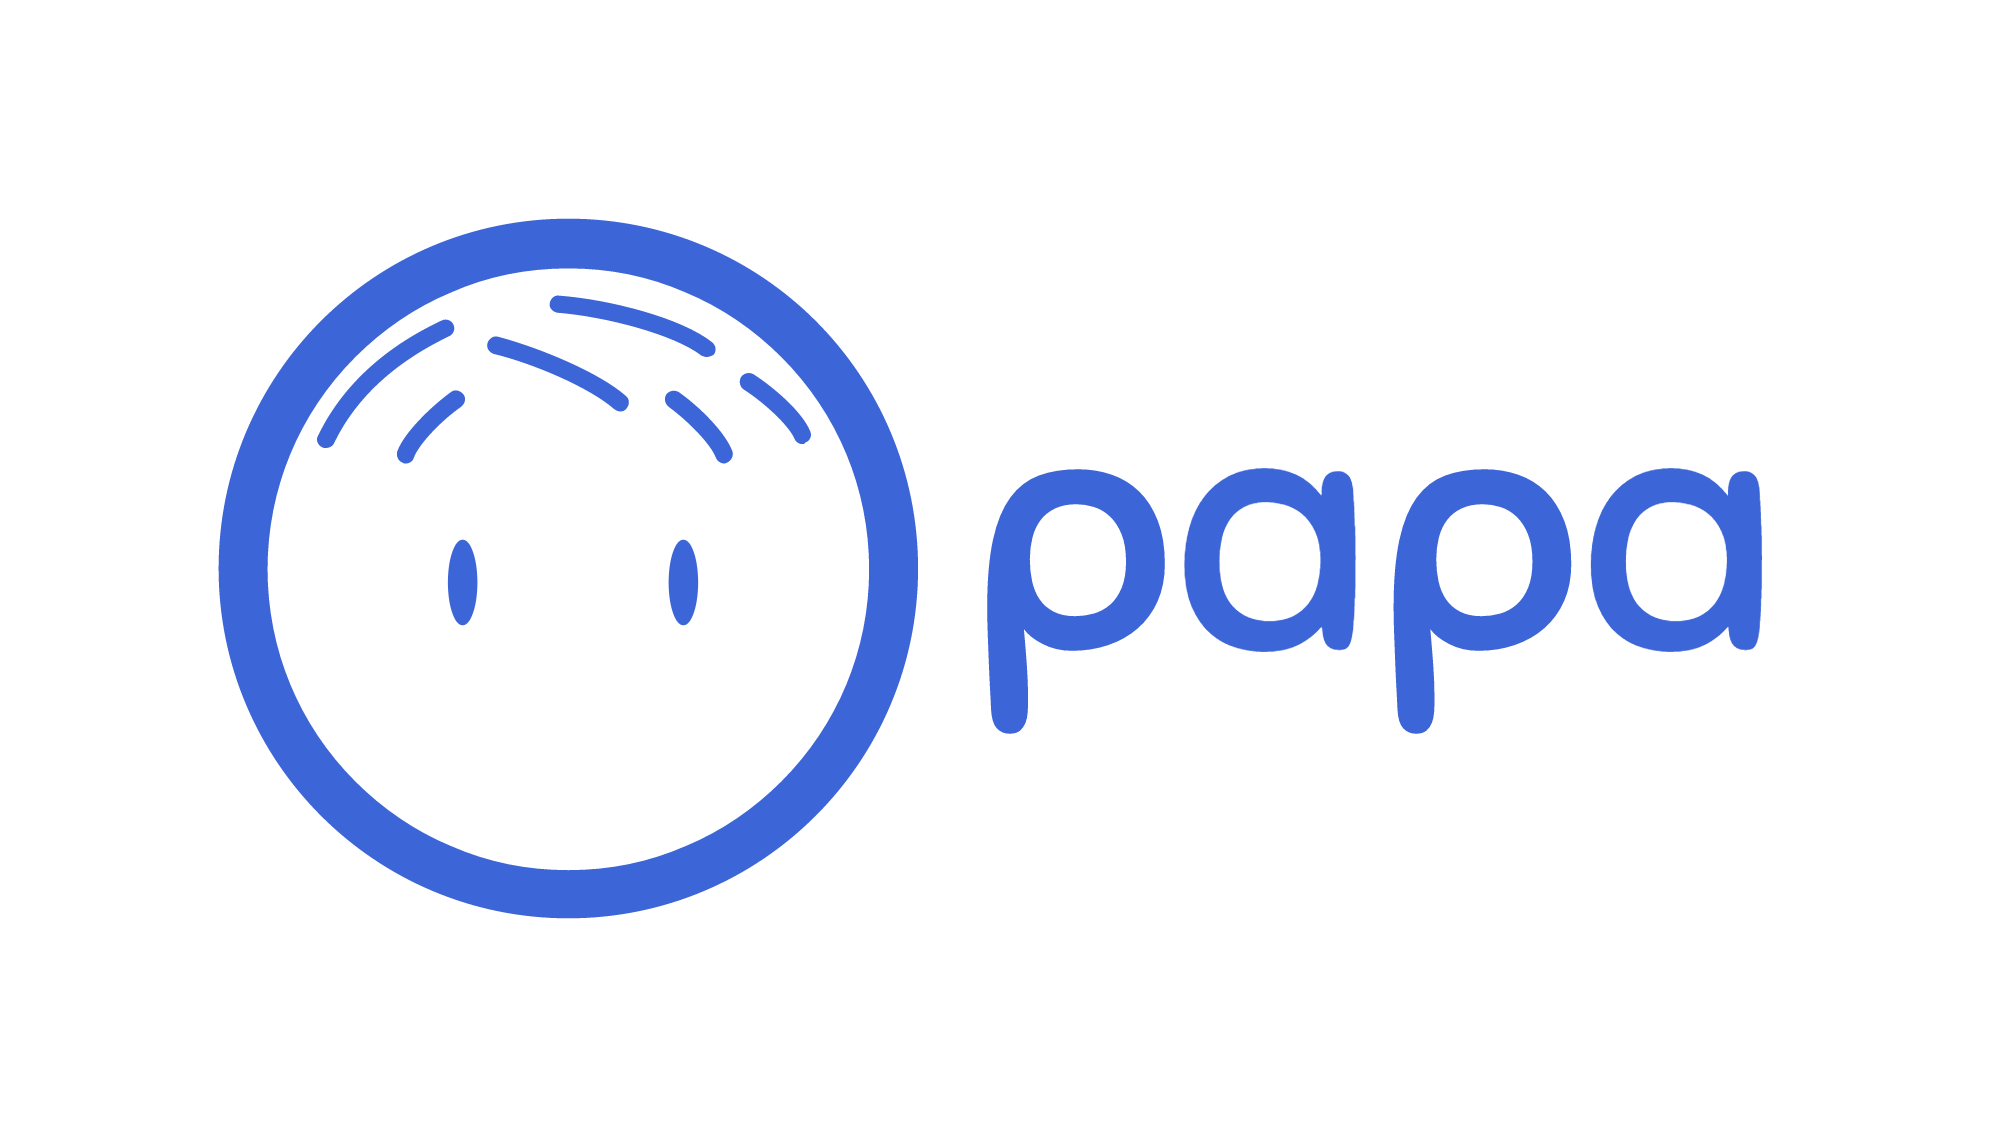 Papa: Papa Pal - Senior Care Assistant ($15/hr) | WayUp